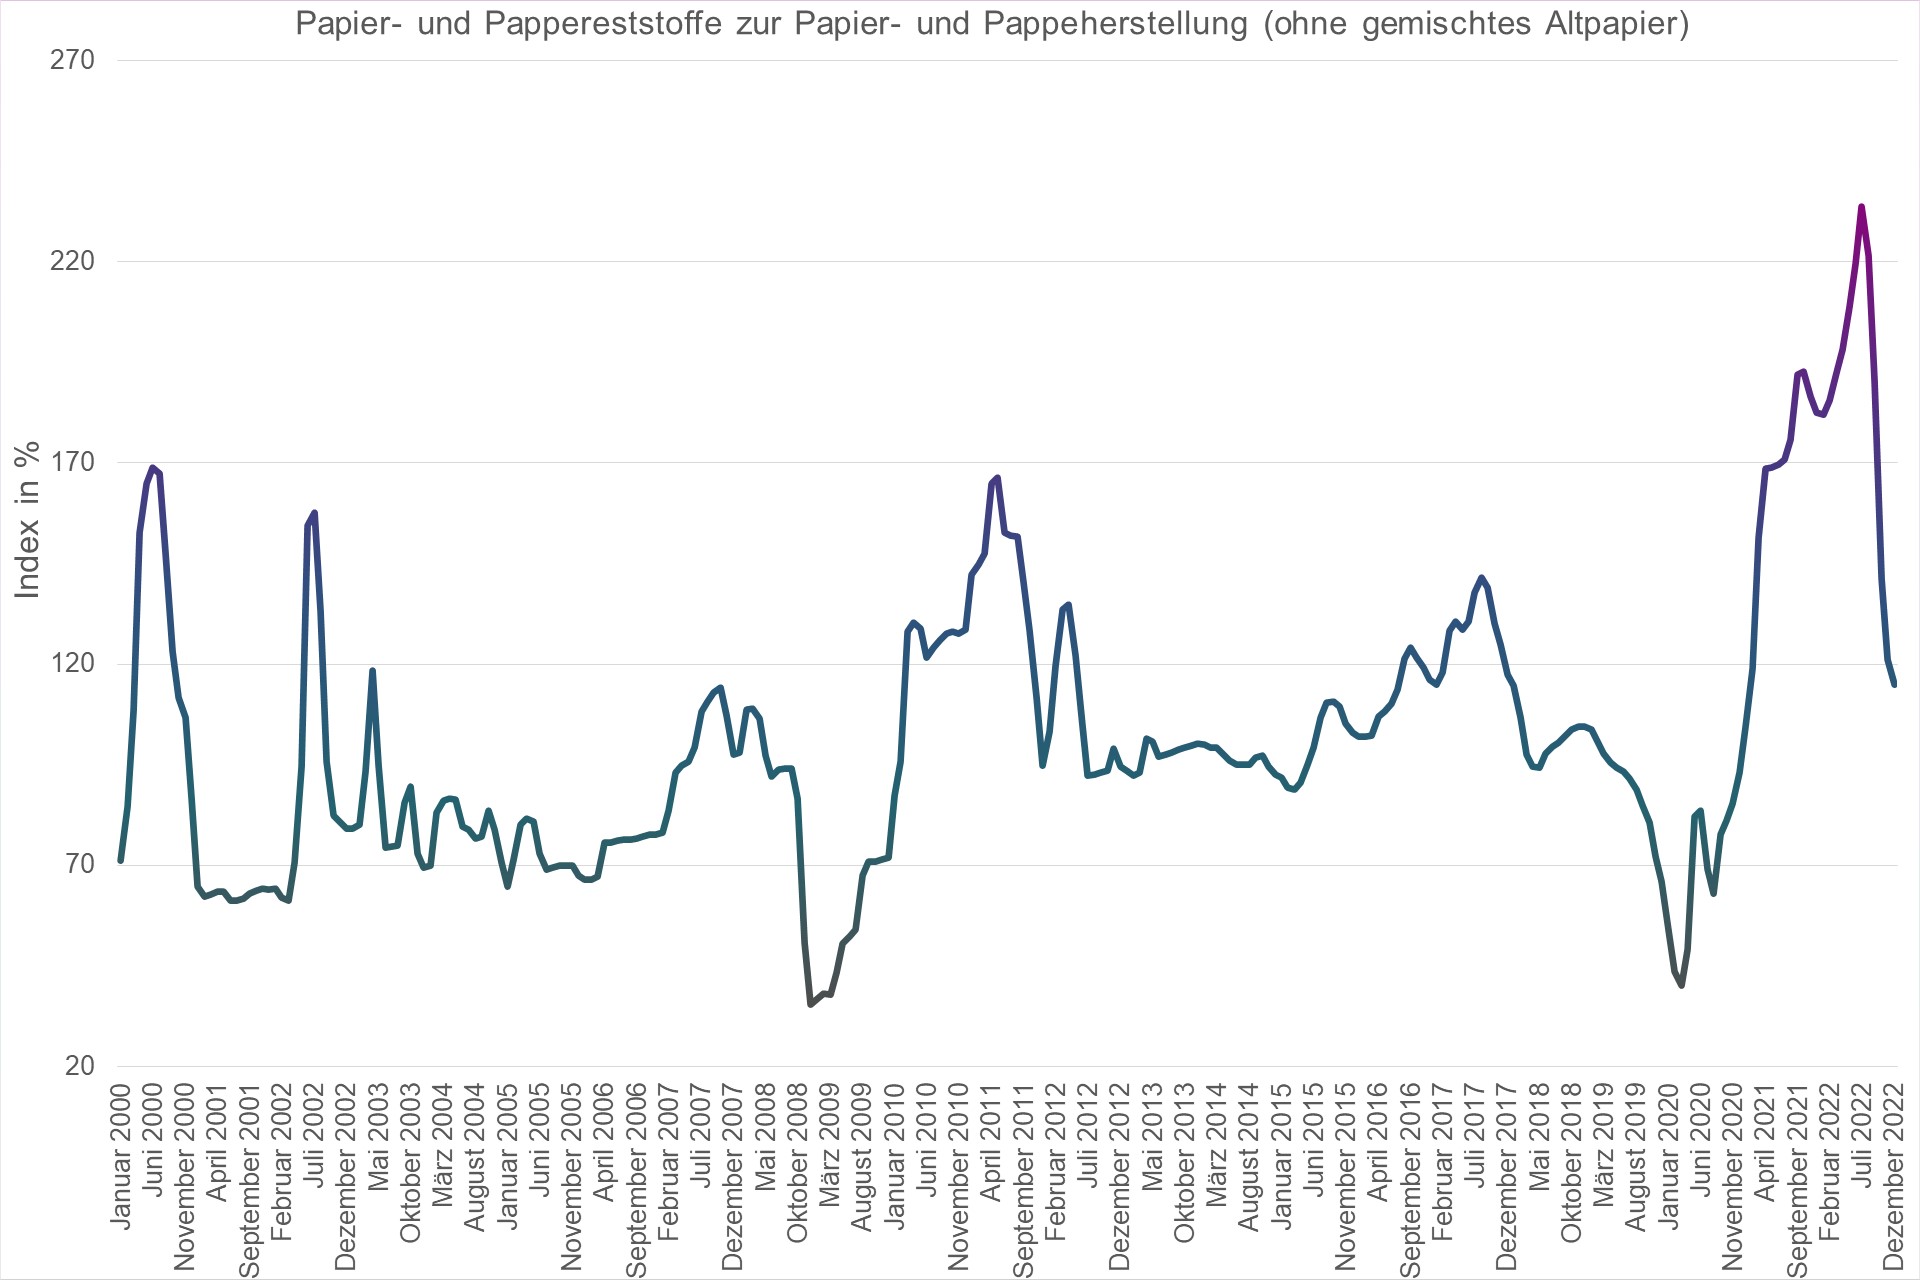 Grafik Preisindex Papier- und Pappereststoffe zur Papier- und Pappeherstellung (ohne gemischtes Altpapier)